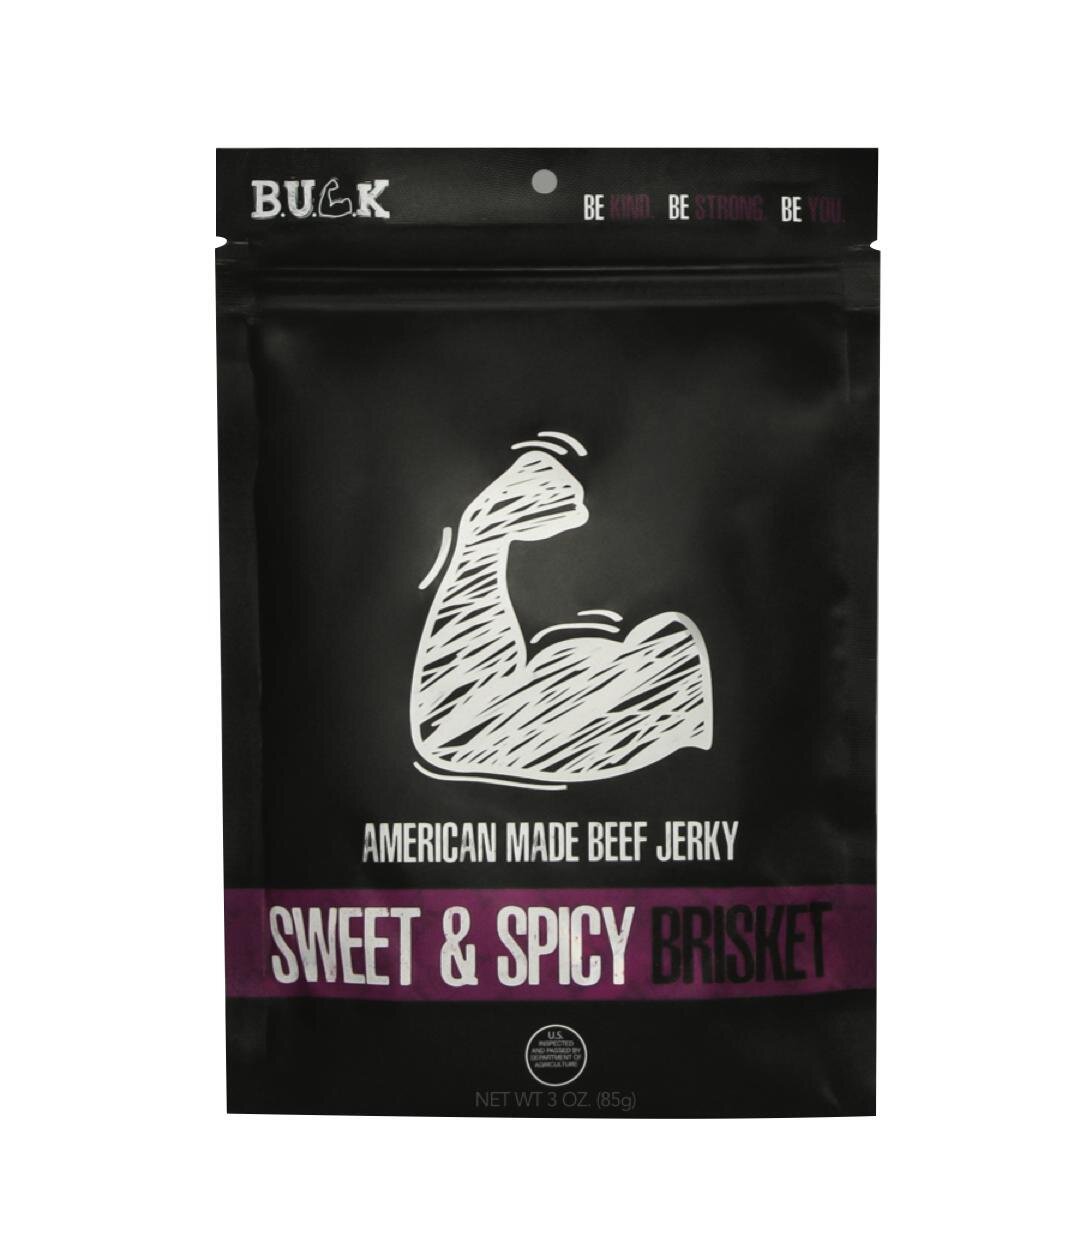 CUBRISKETSSM - 3 oz. Sweet & Spicy Brisket (8-Pack)